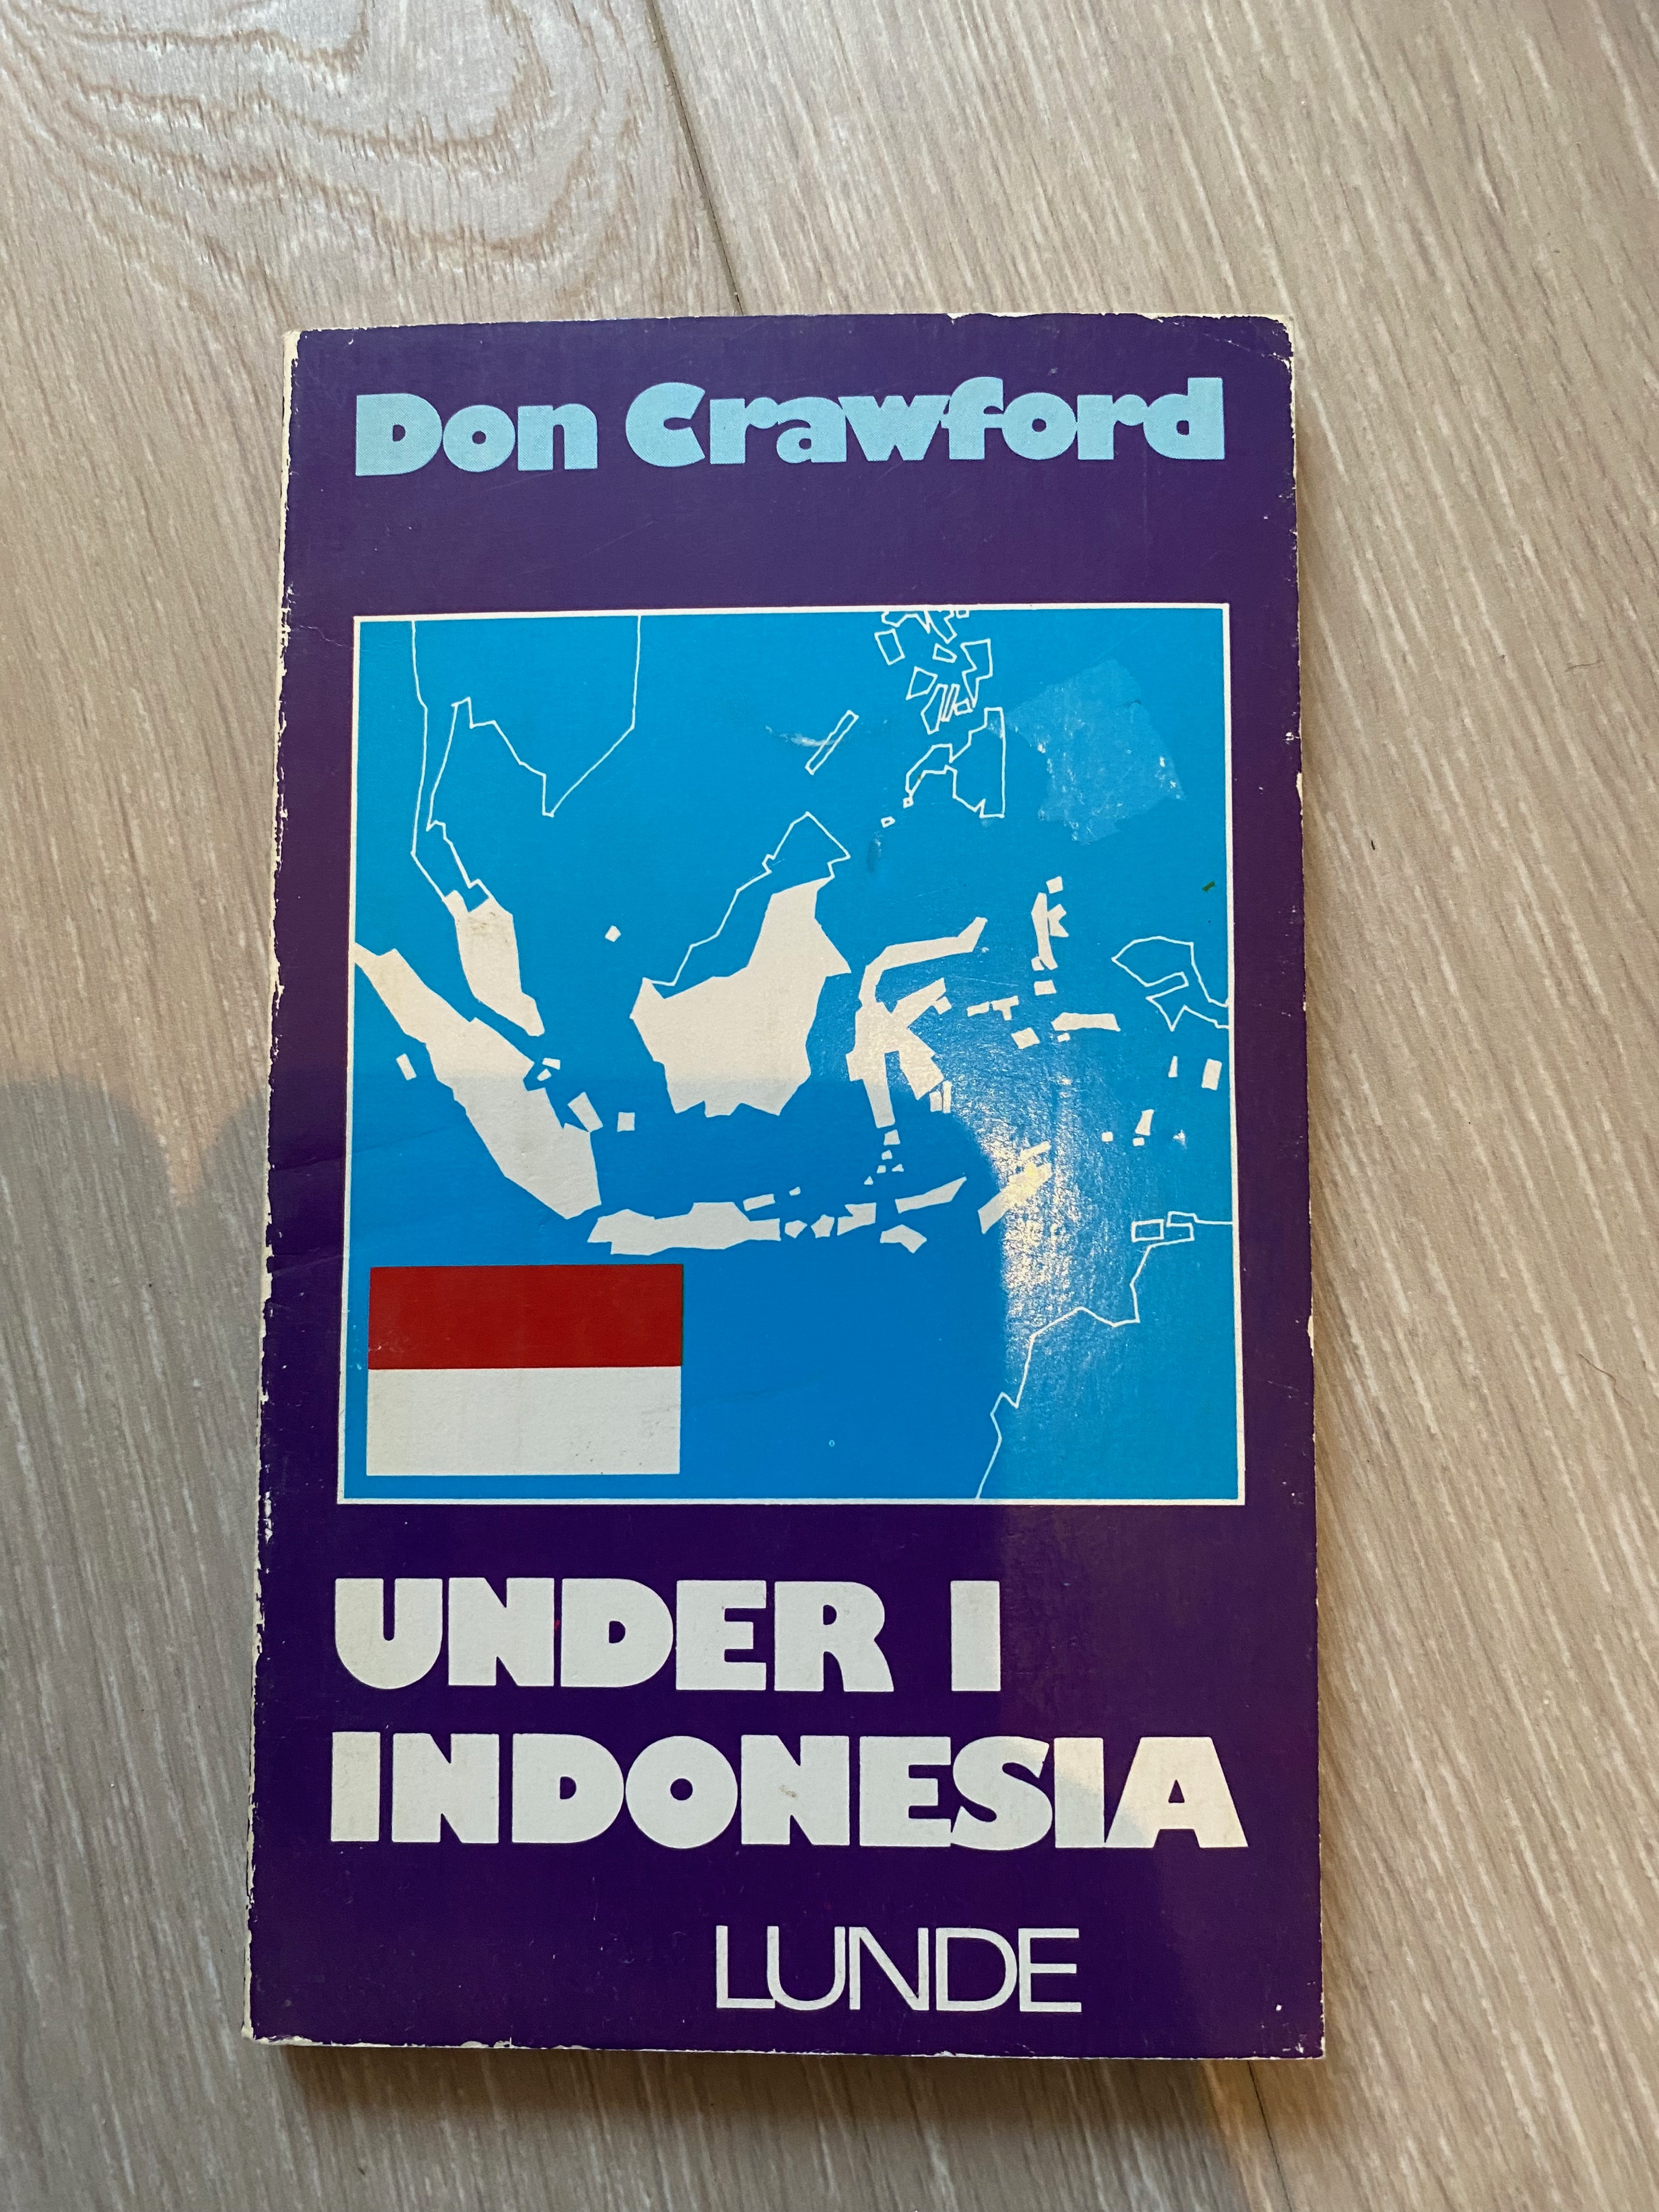 Under i Indonesia